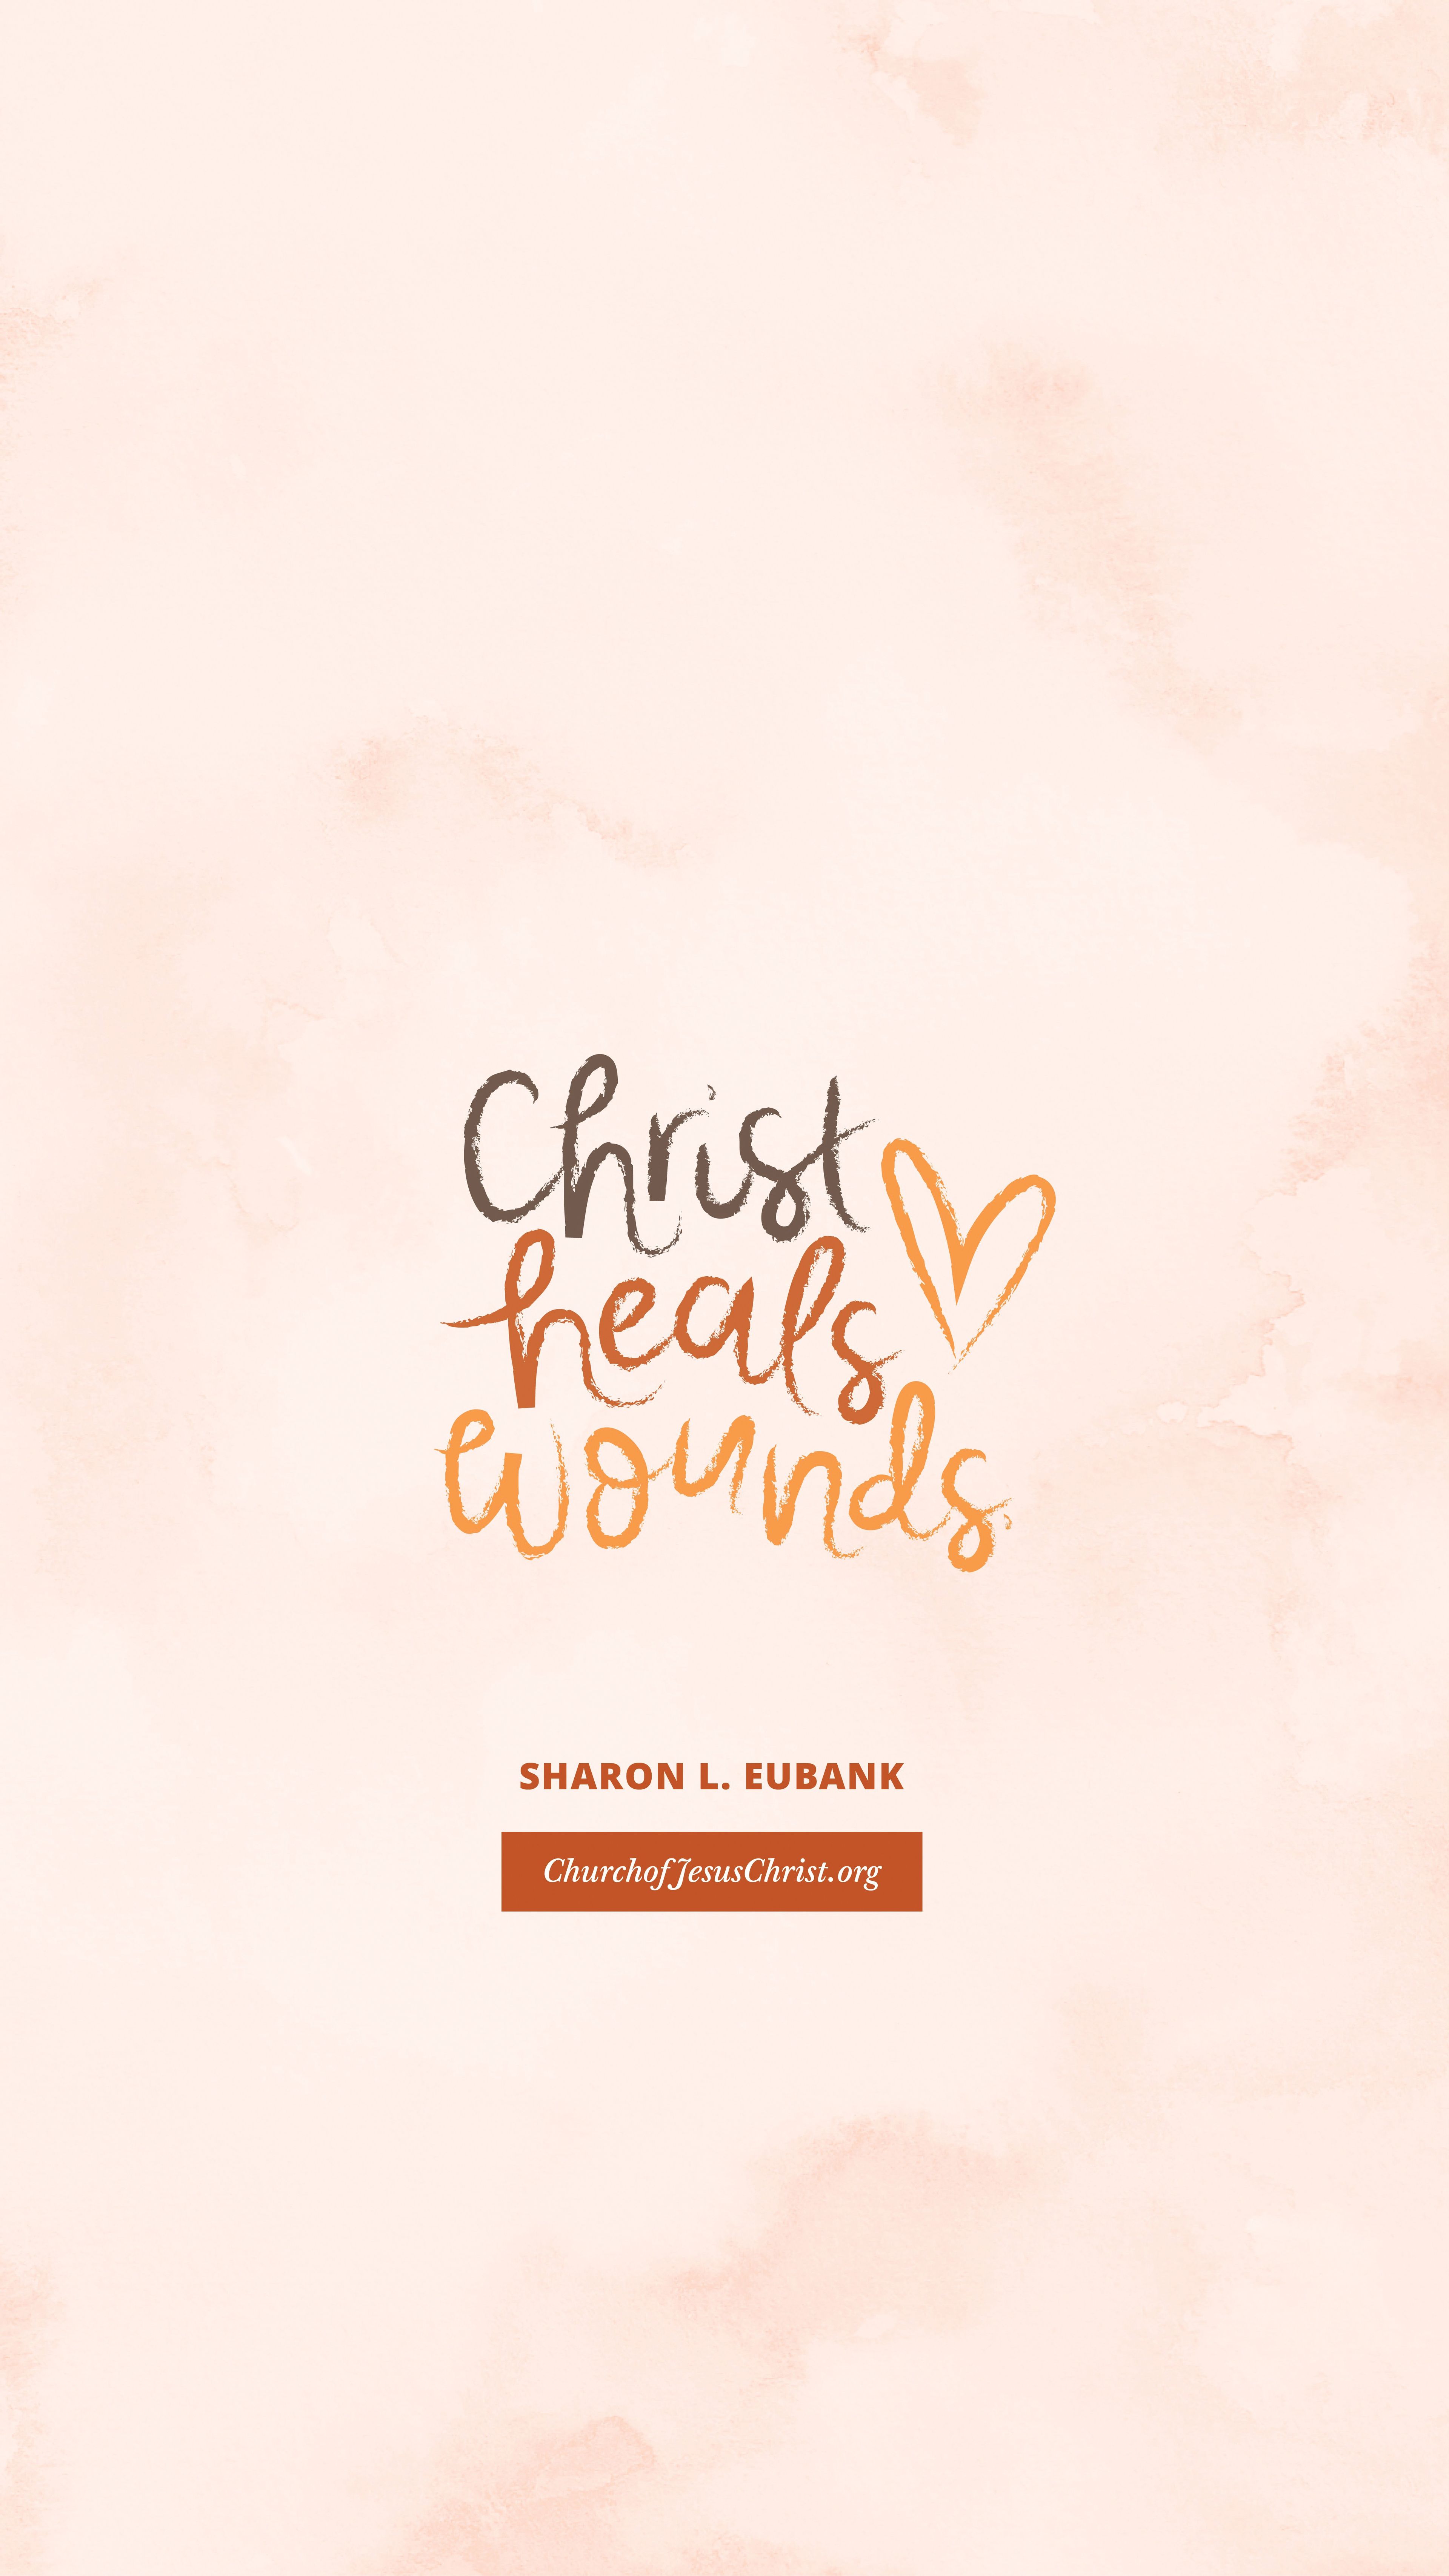 "Christ heals wounds." —Sharon L. Eubank